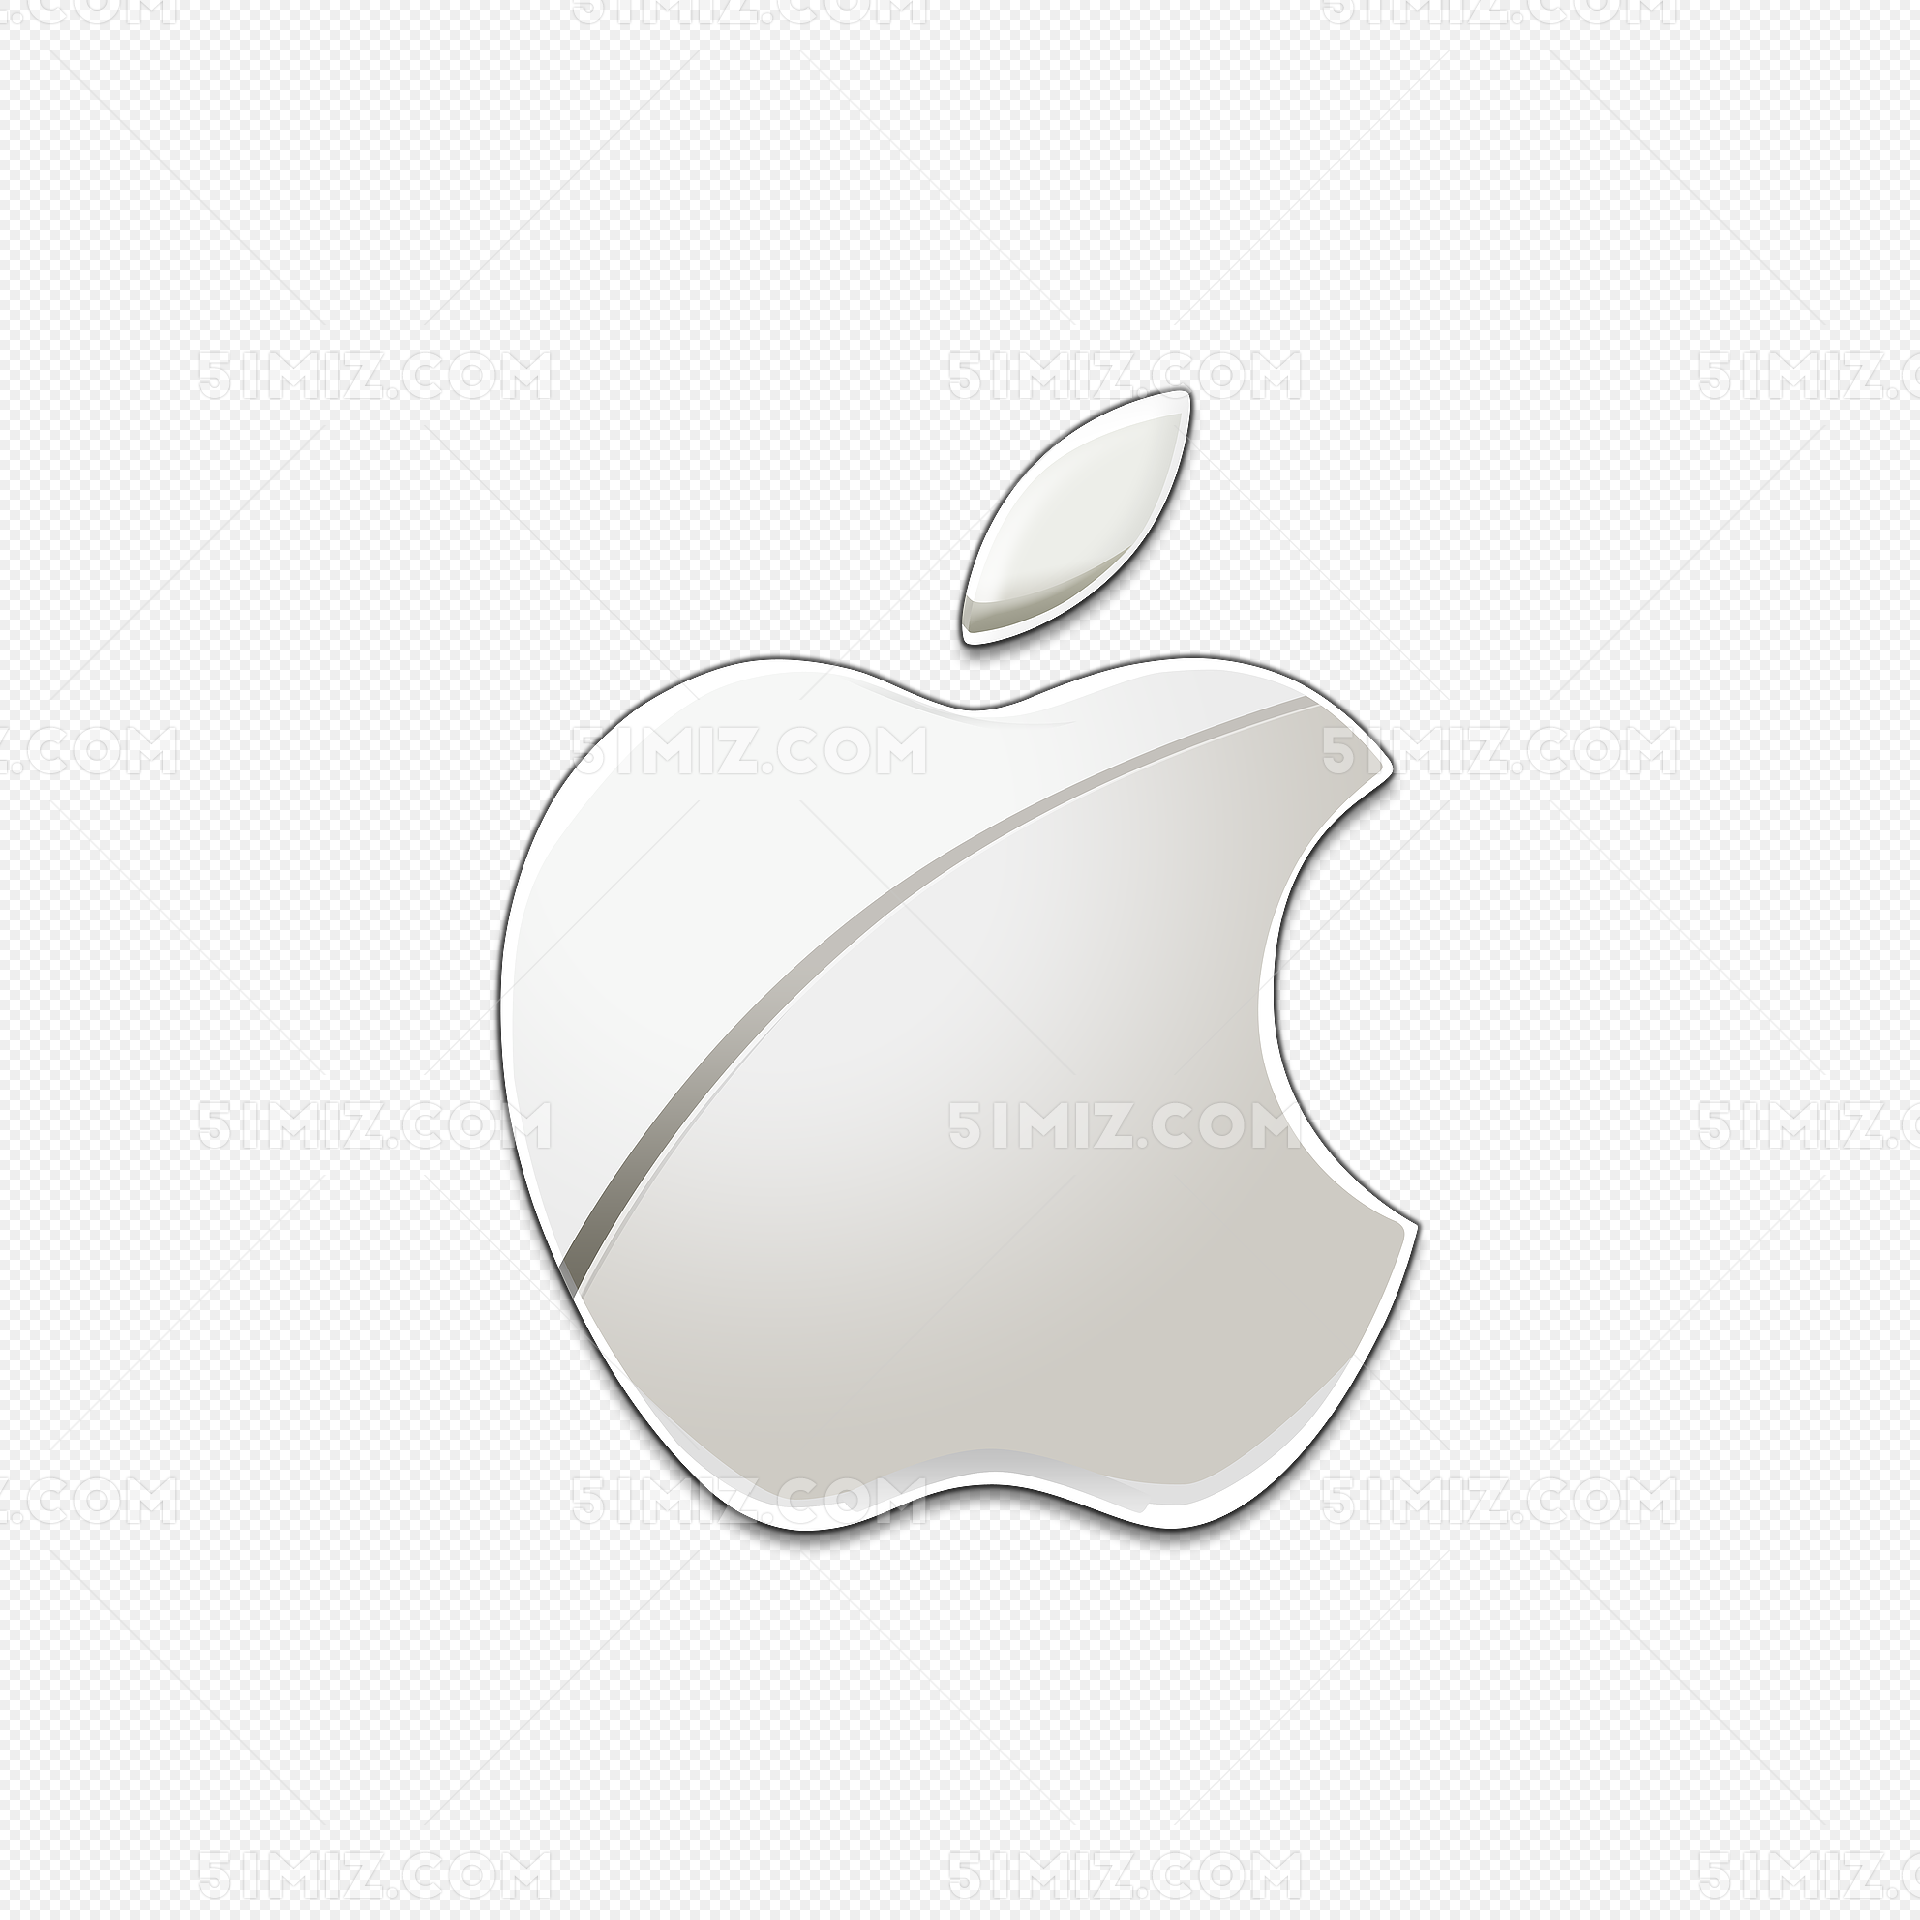 苹果logo高清矢量图 _排行榜大全